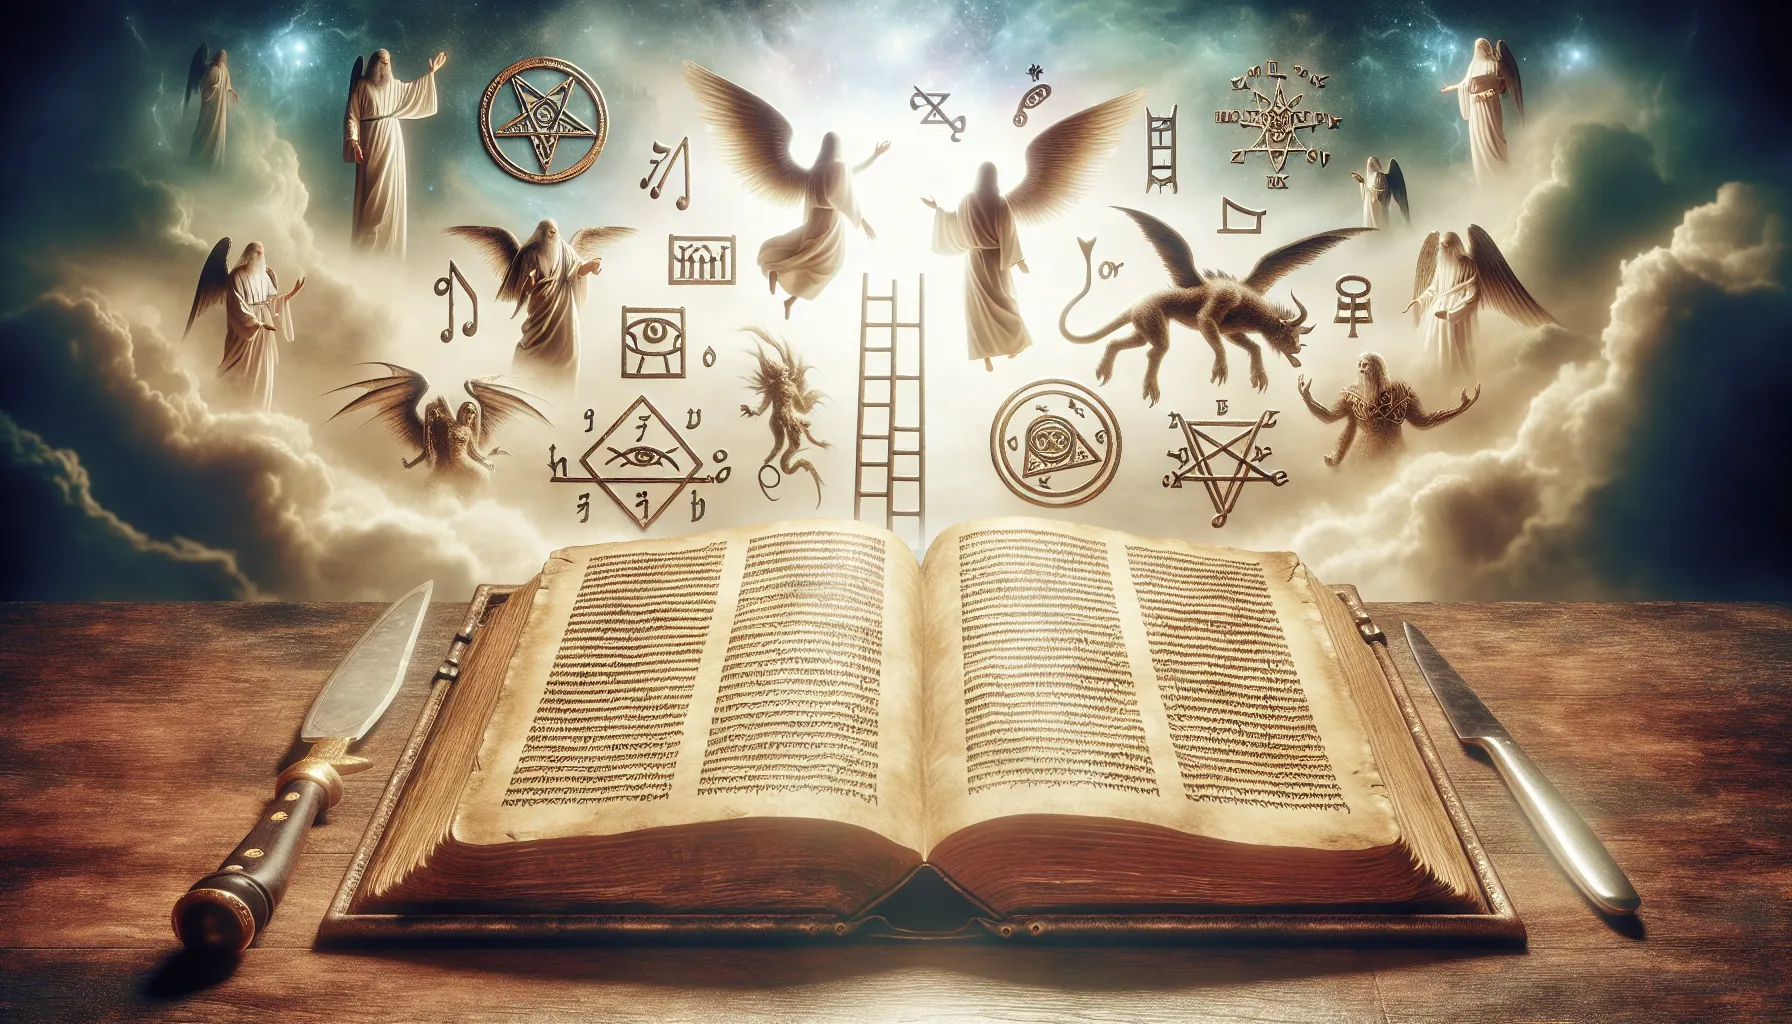 Interpretación de los sueños y visiones según la Biblia